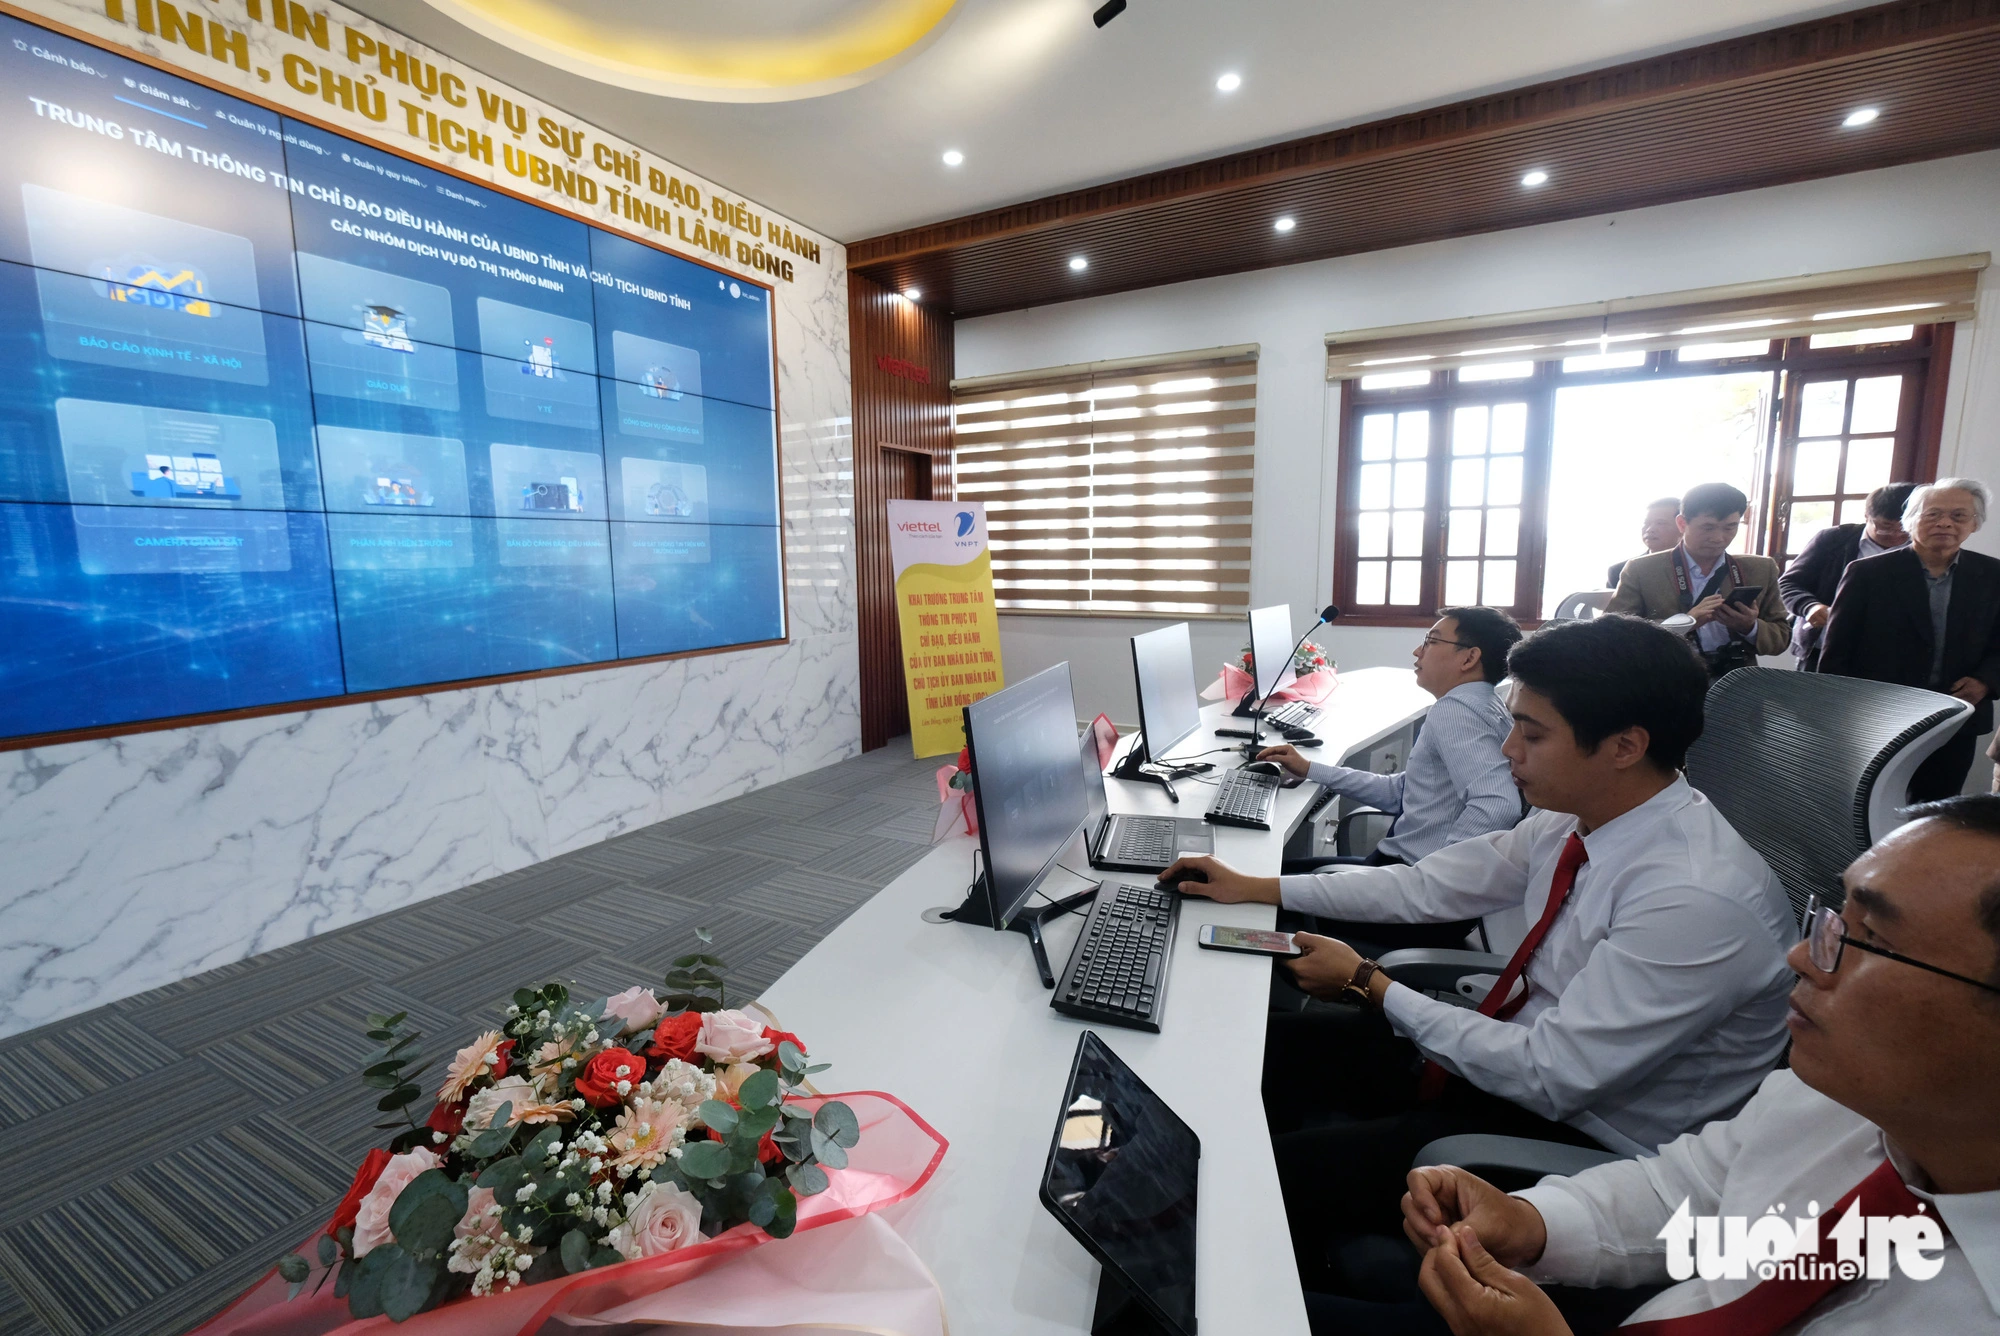 Phòng điều hành hệ thống dữ liệu của UBND tỉnh Lâm Đồng - Ảnh: M.V.